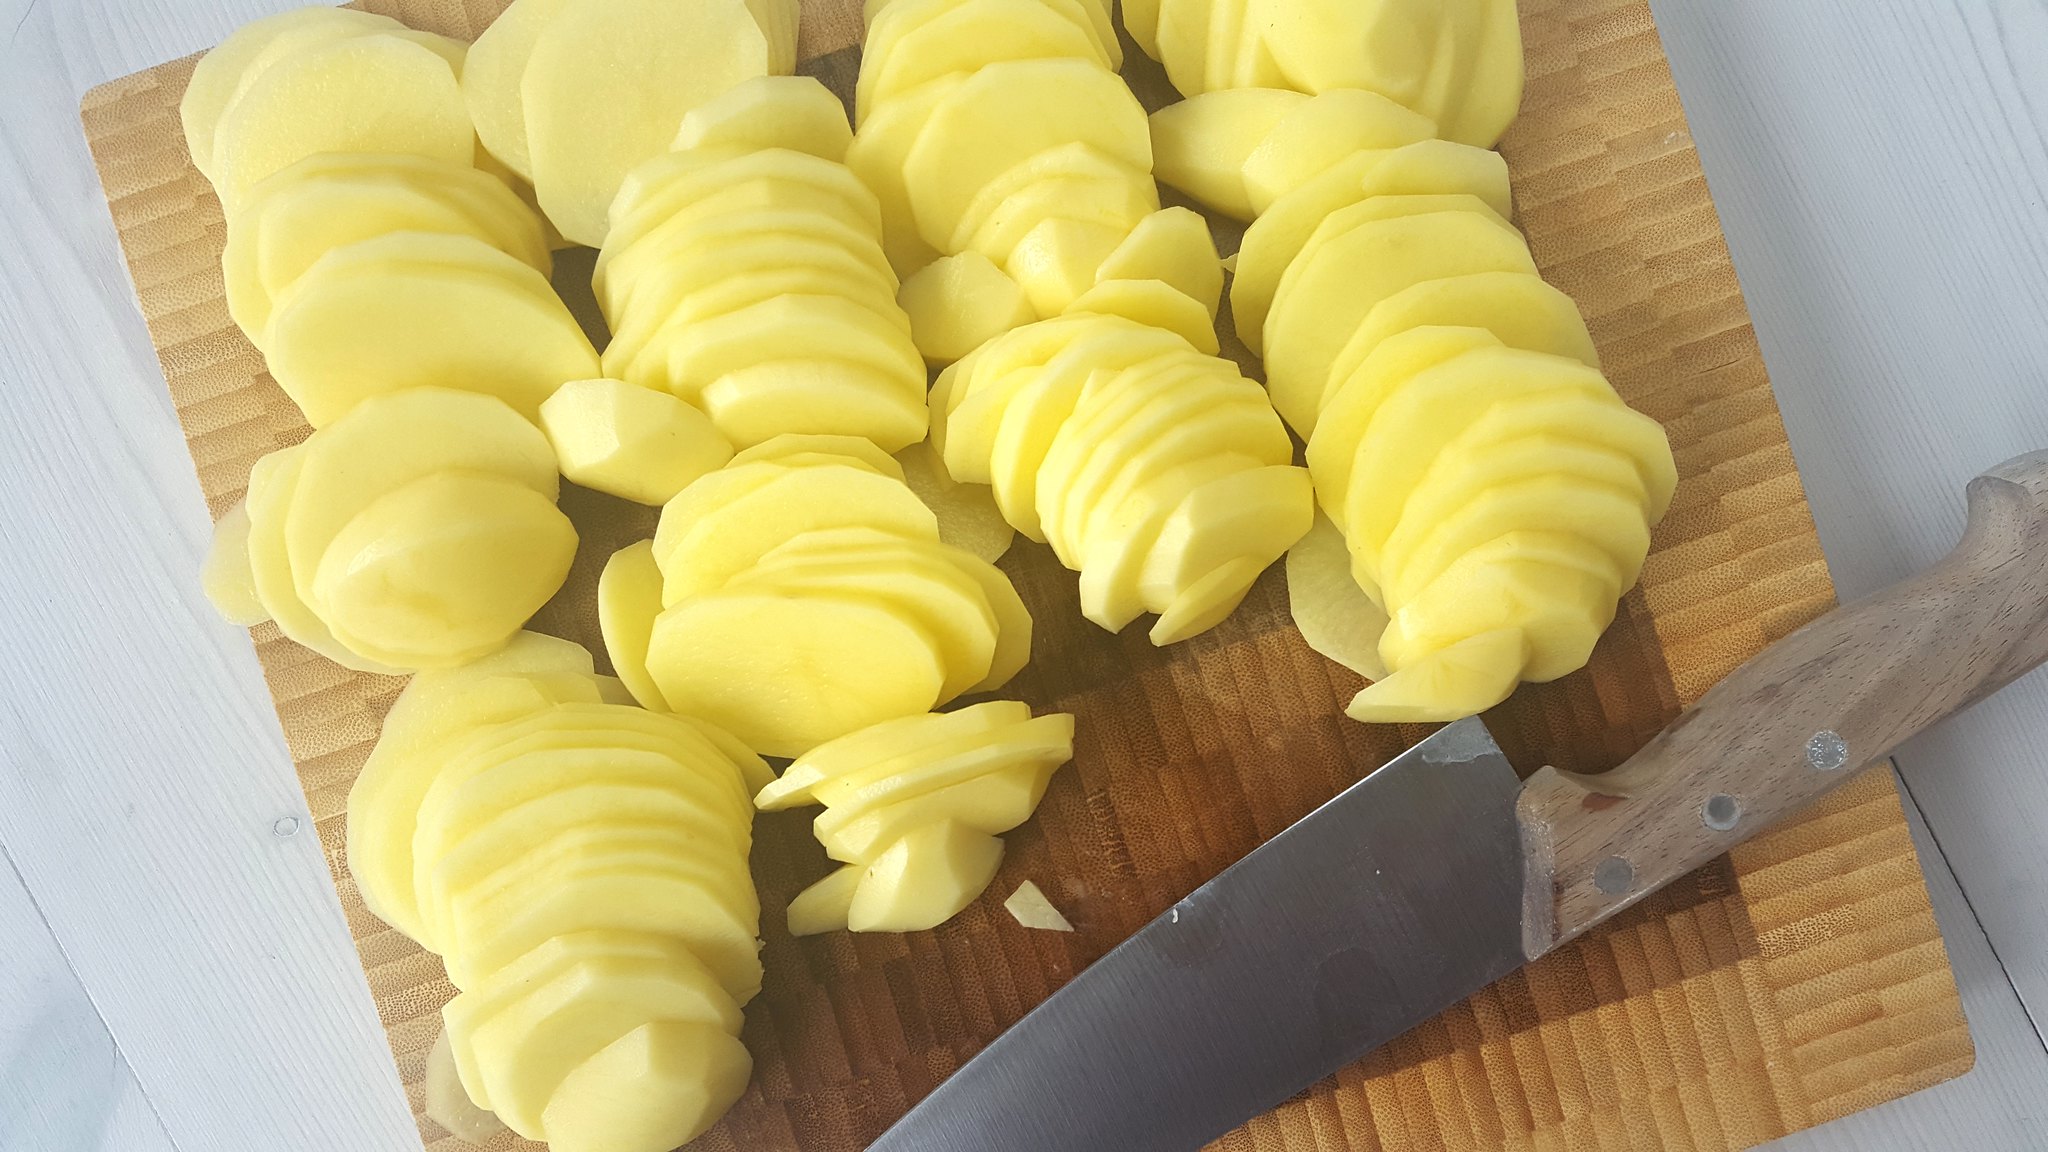 Recipe for Homemade Danish Scalloped Potatoes (Flødekartofler)